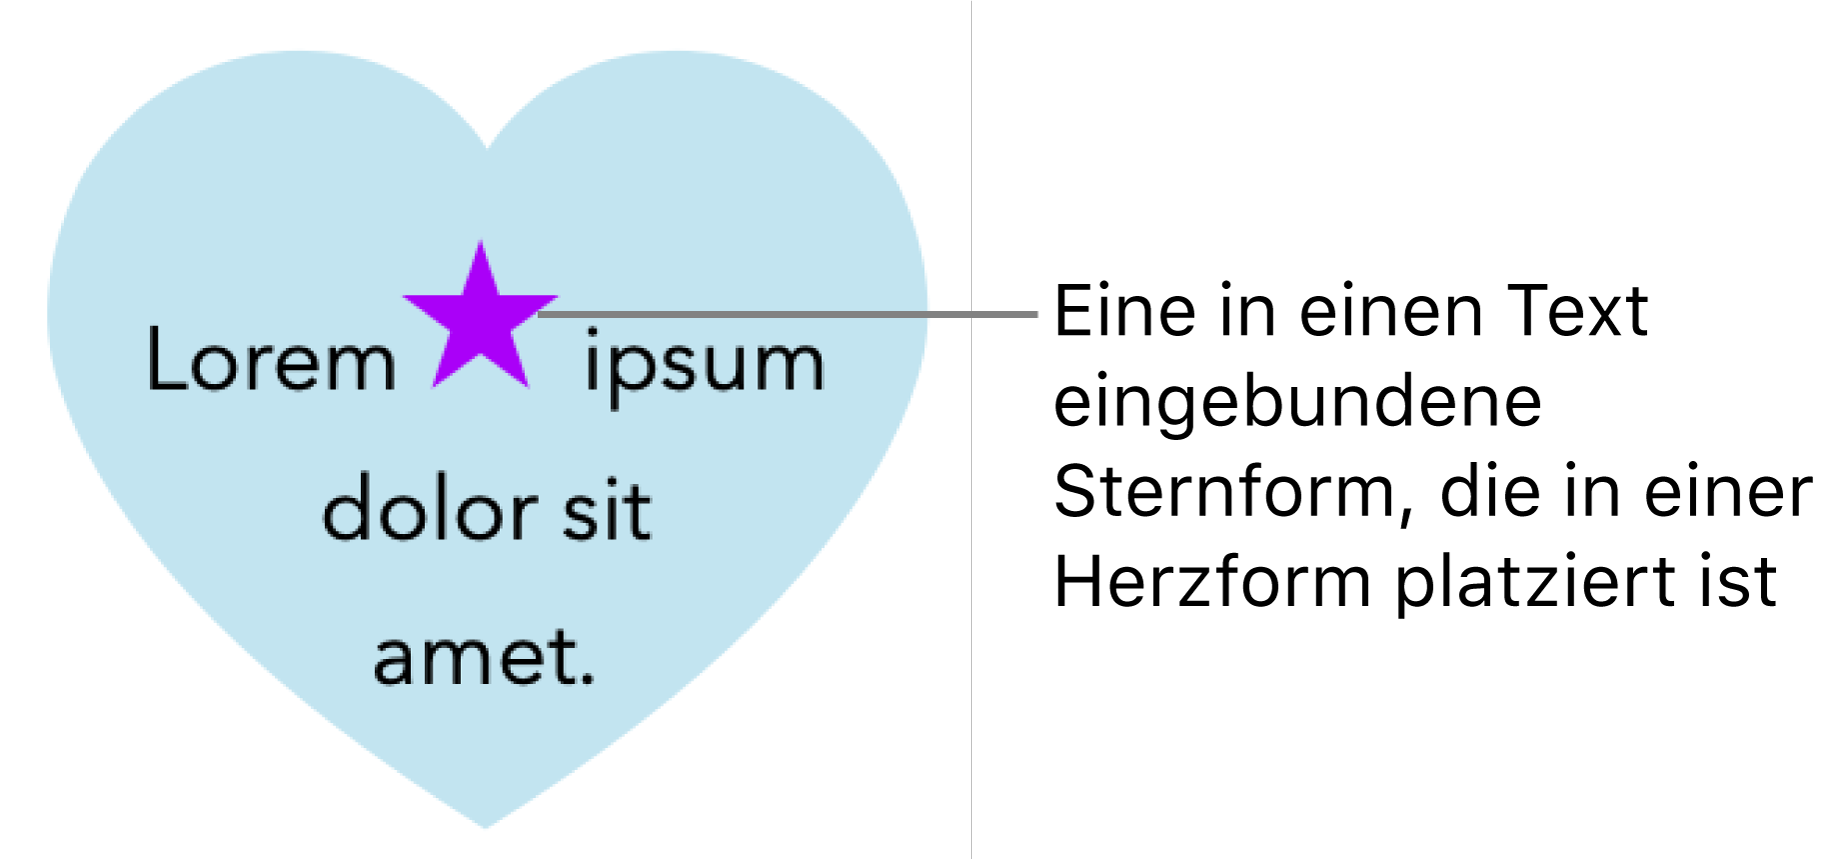 Ein Stern erscheint in den Text in einem Herz eingebunden.